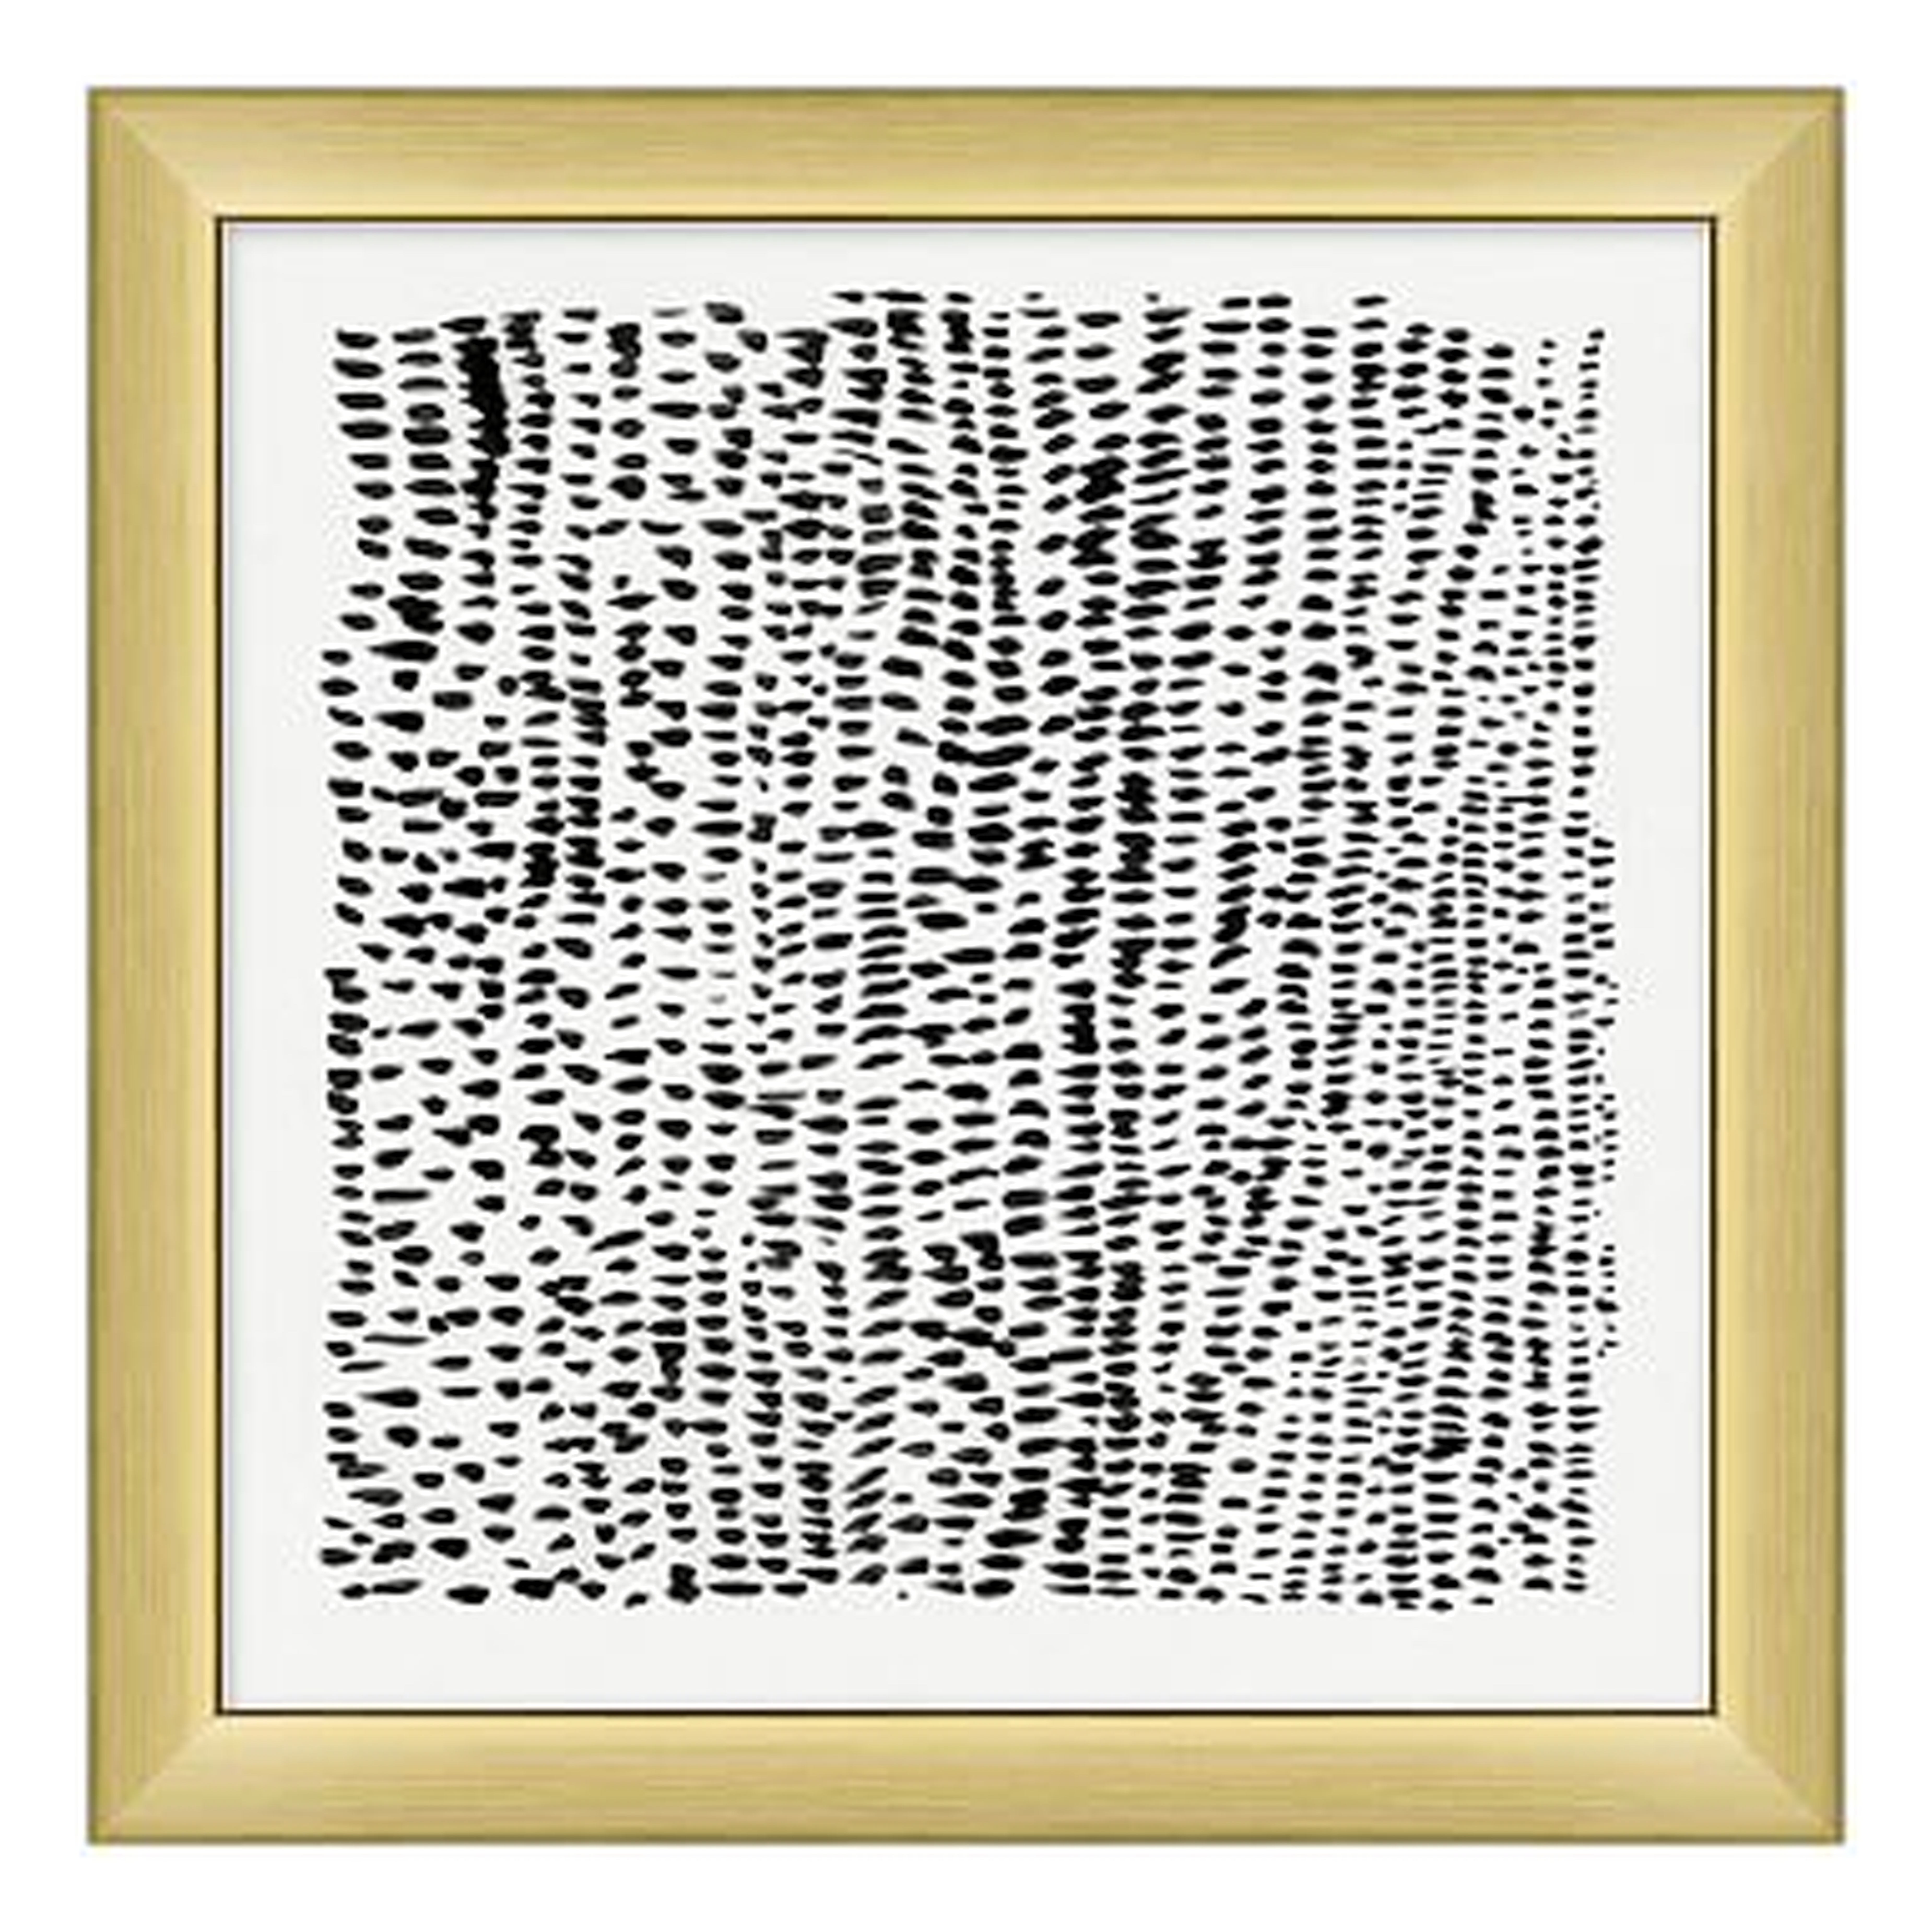 Animal Pattern Framed Art, black/gold frame, 16"x16" - Pottery Barn Teen